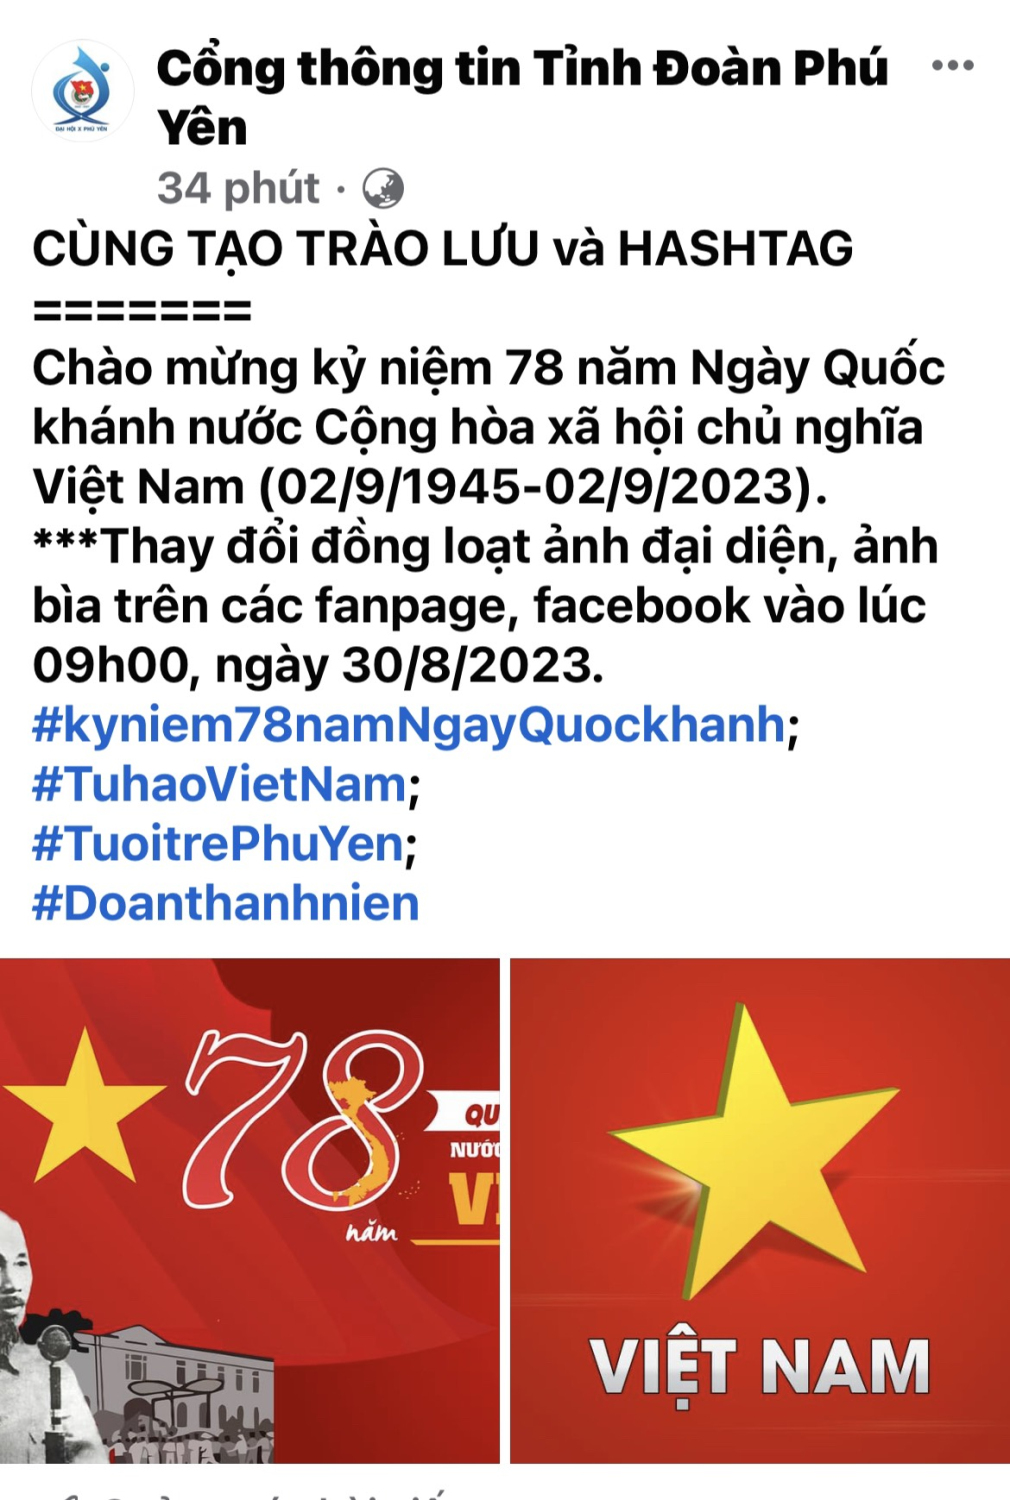 Tỉnh Đoàn Phú Yên phát động đồng loạt thay ảnh đại diện, ảnh bìa fanpage chào mừng kỷ niệm 78 năm Ngày Quốc khánh nước Cộng hòa xã hội chủ nghĩa Việt Nam (02/9/1945-02/9/2023)